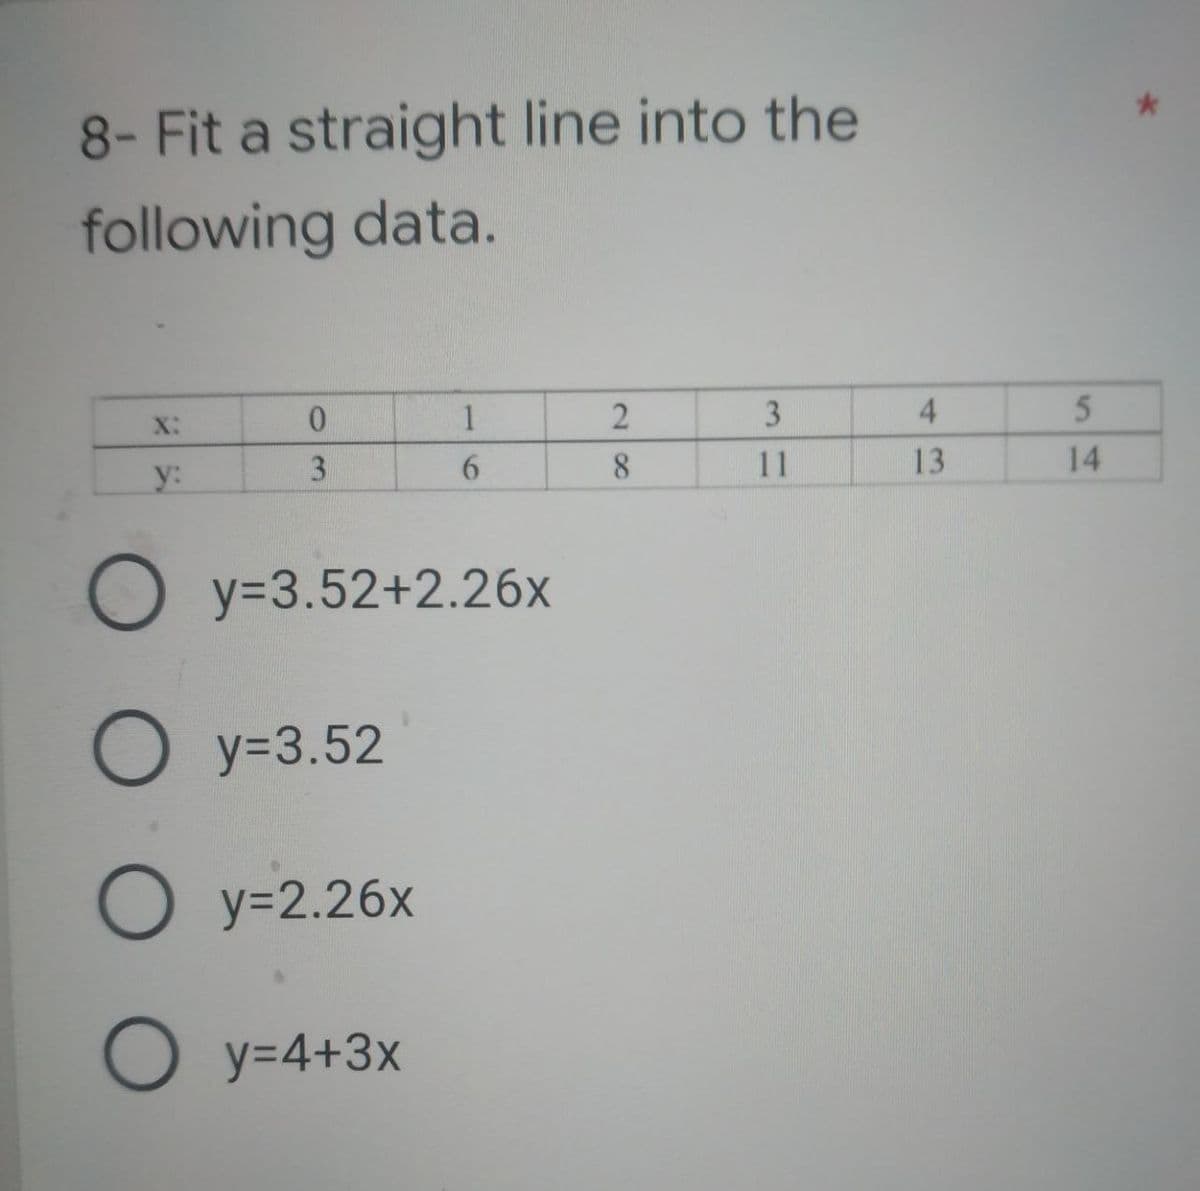 8- Fit a straight line into the
following data.
X:
0
1
2
3
4
3
y:
6
11
13
Oy=3.52+2.26x
Oy=3.52
O y=2.26x
O y=4+3x
8
5
14